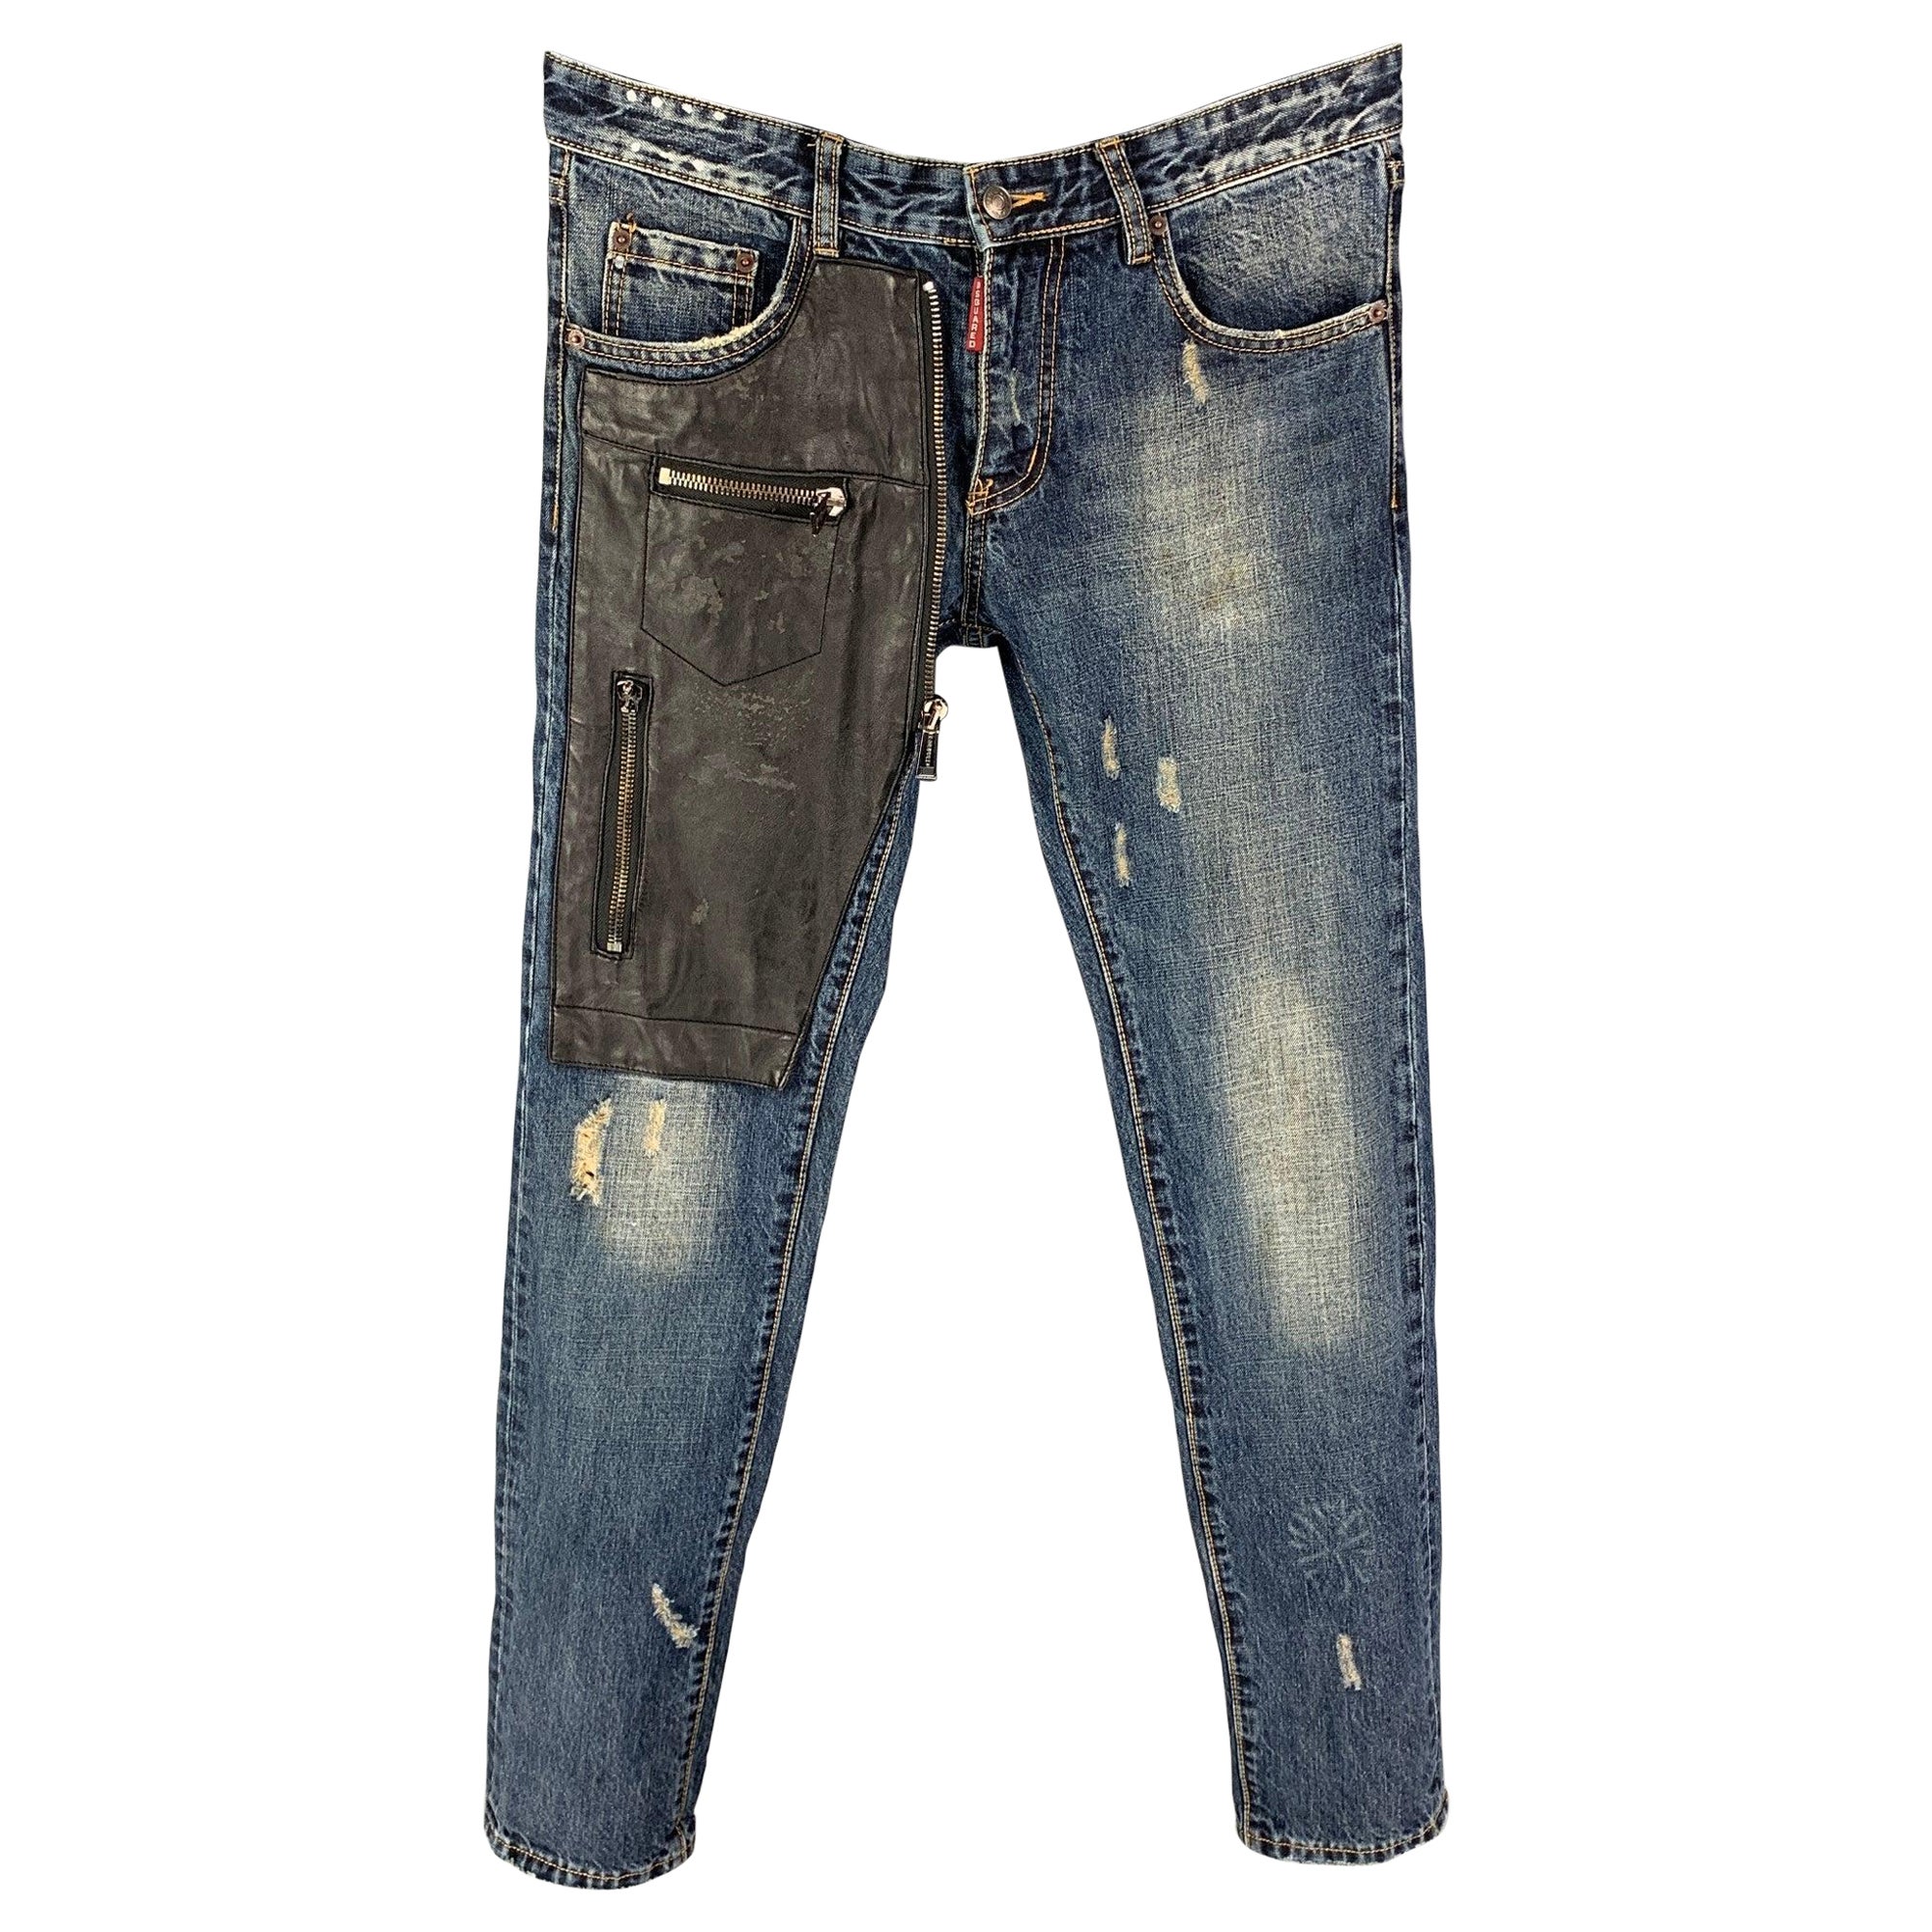 DSQUARED2 - Jean skinny en coton délavé bleu et noir, taille 32